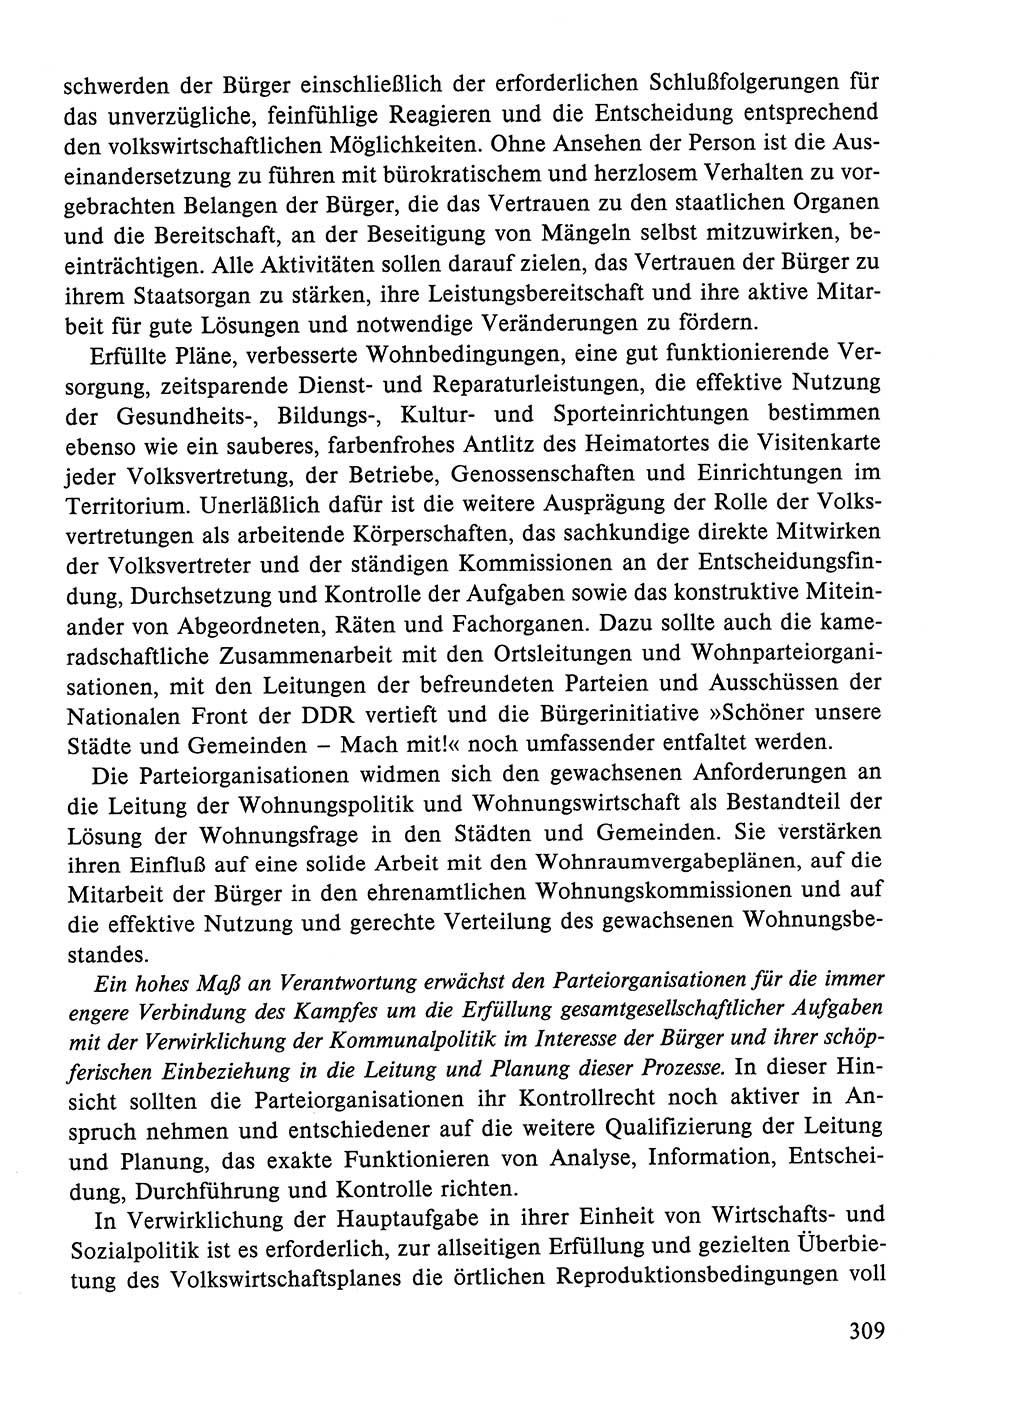 Dokumente der Sozialistischen Einheitspartei Deutschlands (SED) [Deutsche Demokratische Republik (DDR)] 1984-1985, Seite 118 (Dok. SED DDR 1984-1985, S. 118)